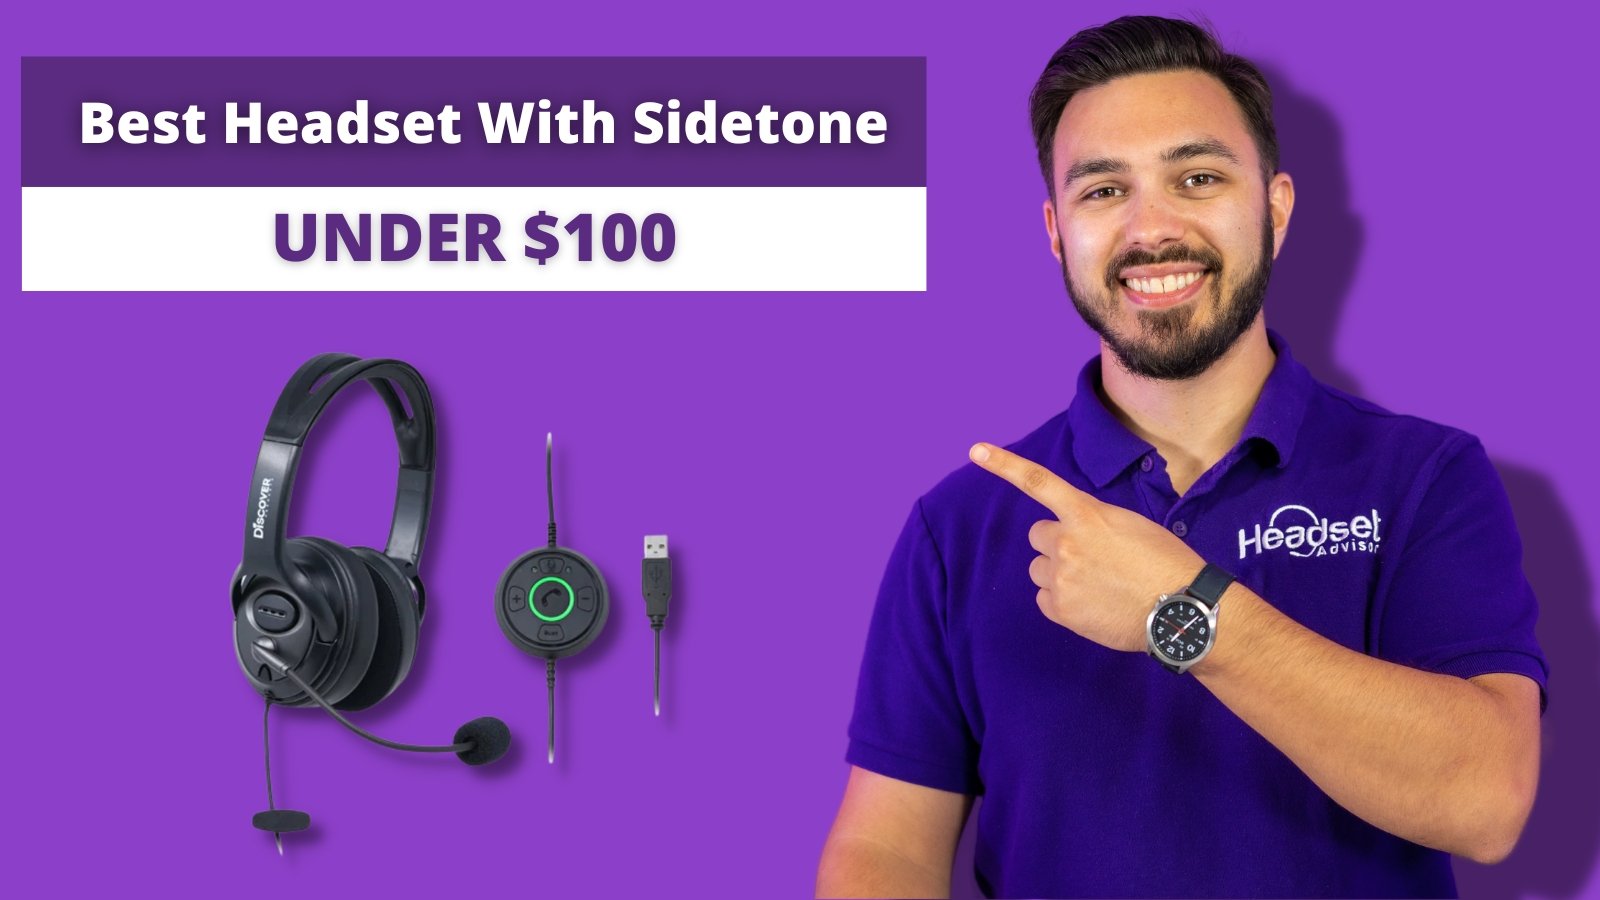 Best Headset With Sidetone For Under $100.00 - Headset Advisor